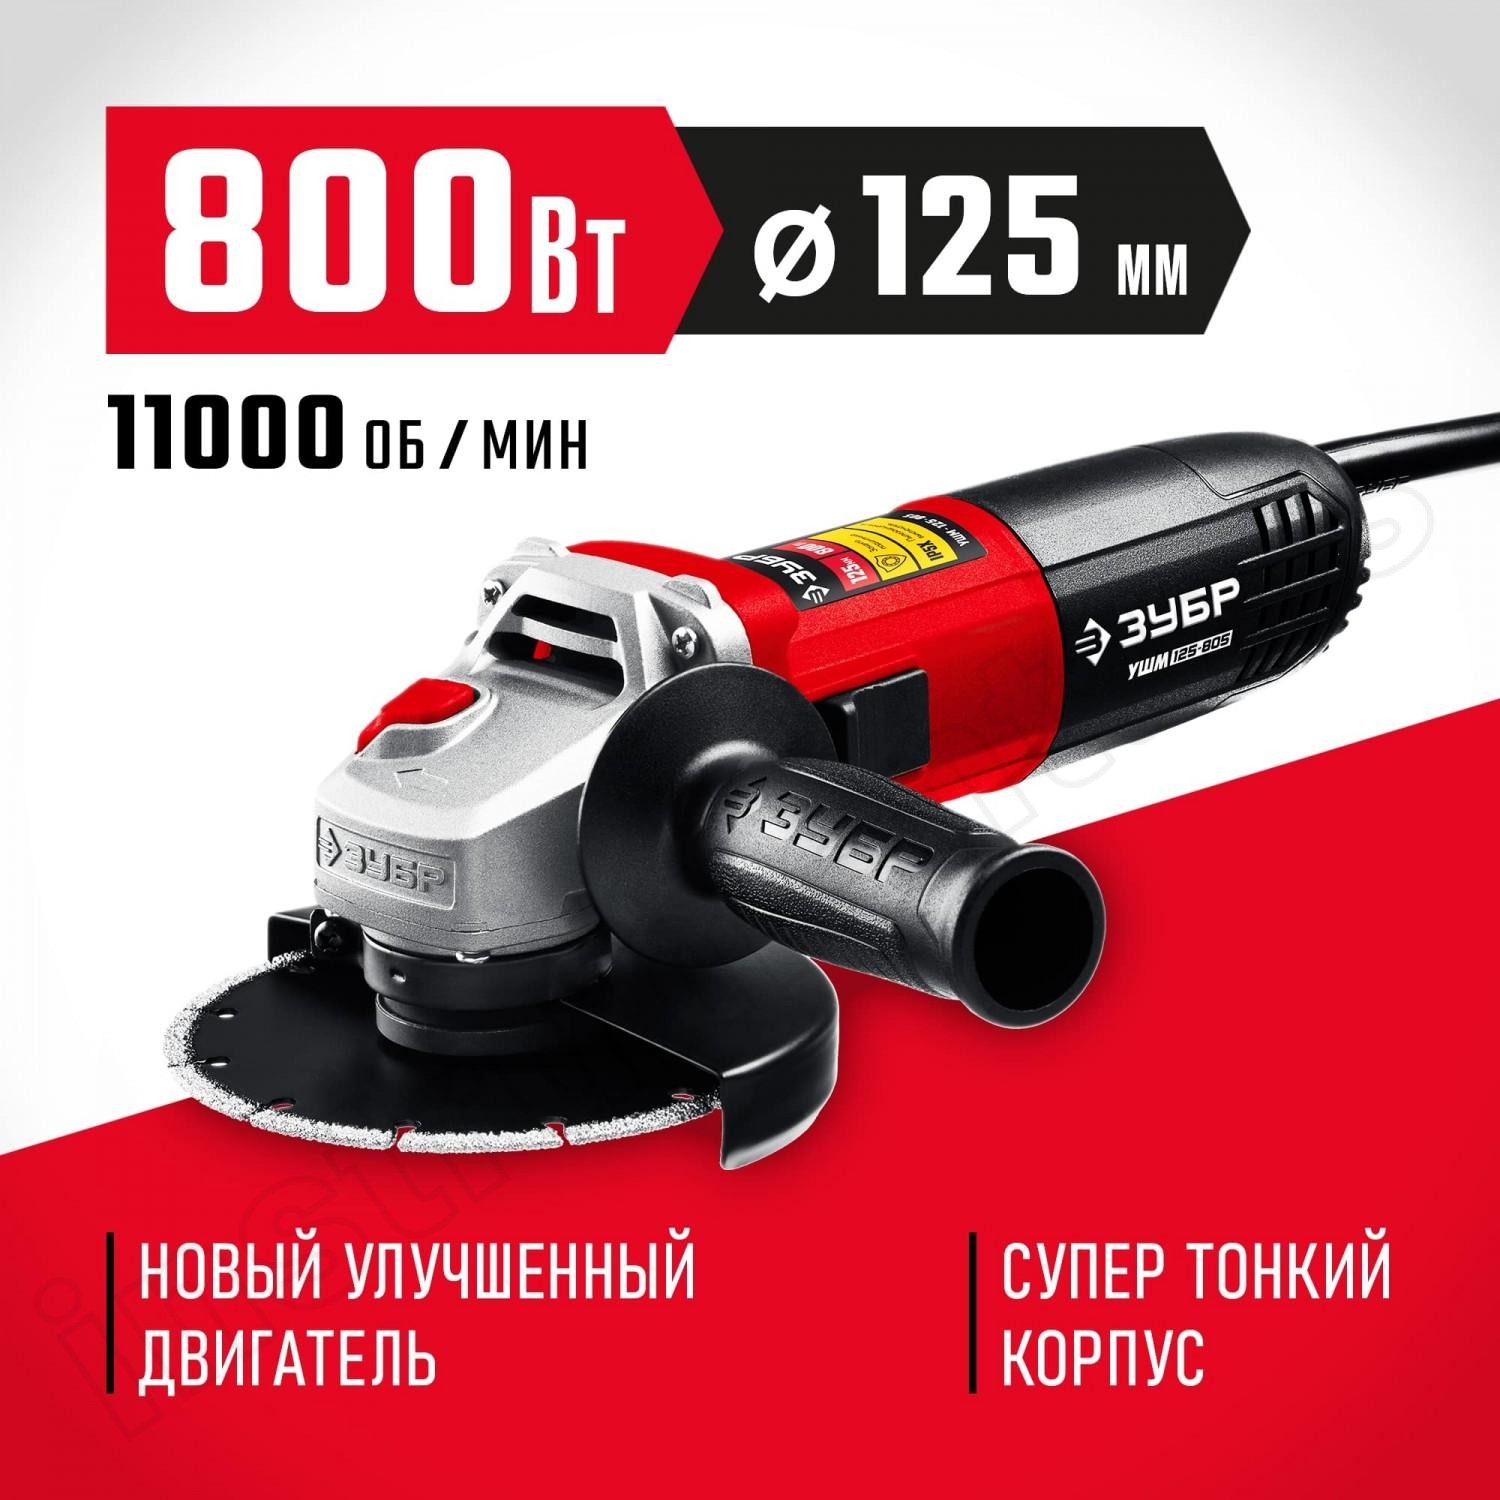 ЗУБР 800 Вт, 125 мм, углошлифовальная машина (болгарка) УШМ-125-805 - фото 1